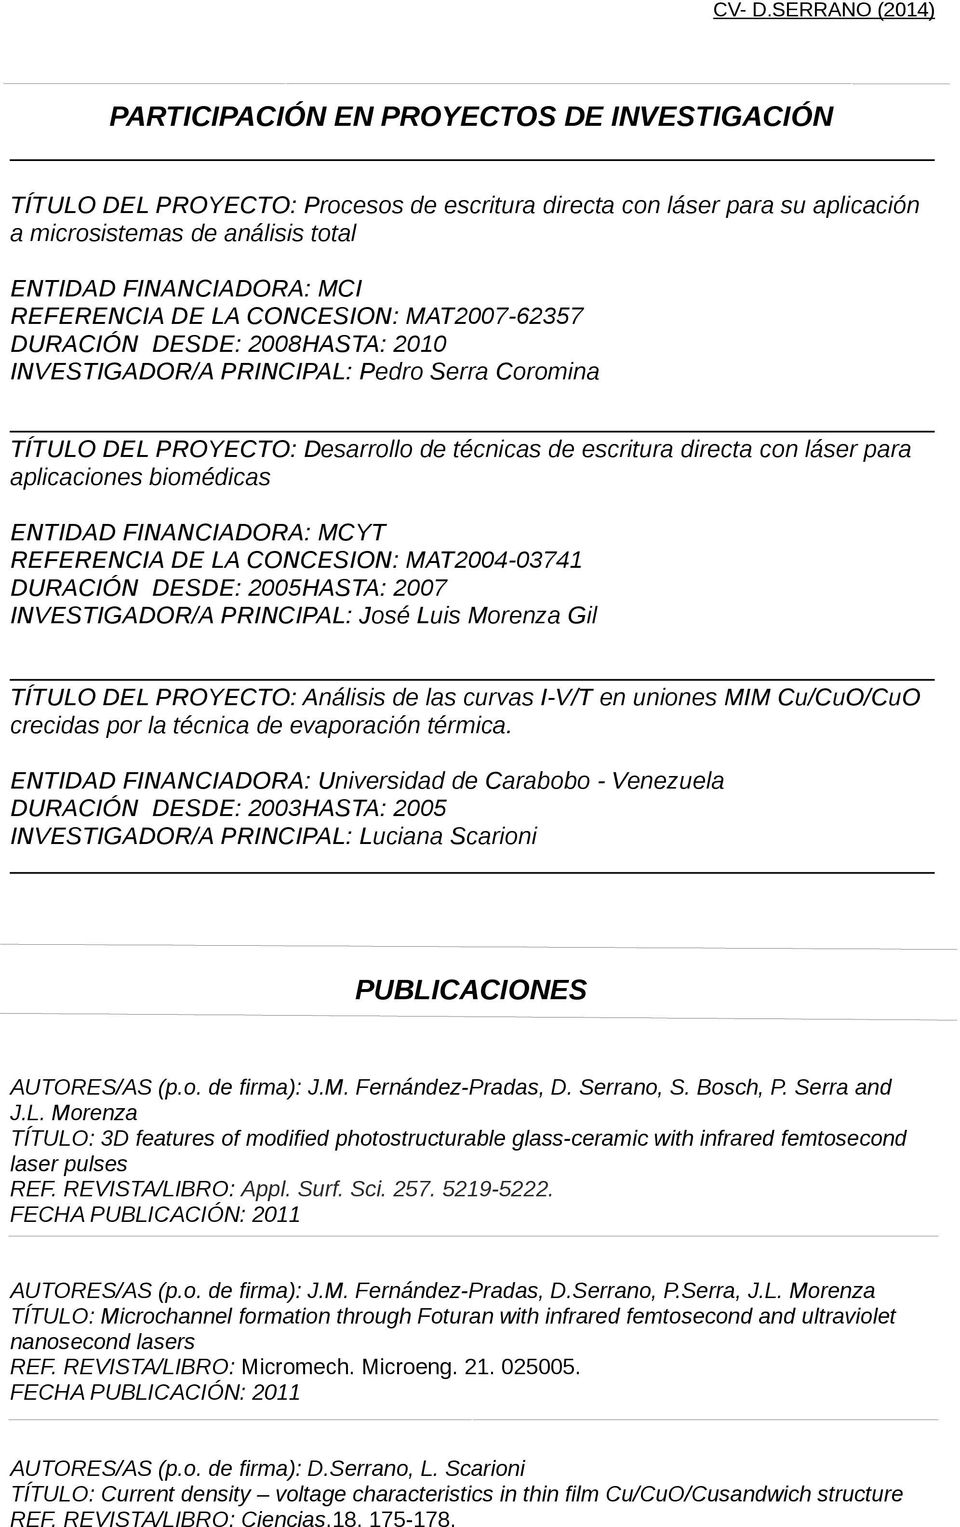 biomédicas ENTIDAD FINANCIADORA: MCYT REFERENCIA DE LA CONCESION: MAT2004-03741 DURACIÓN DESDE: 2005HASTA: 2007 INVESTIGADOR/A PRINCIPAL: José Luis Morenza Gil TÍTULO DEL PROYECTO: Análisis de las